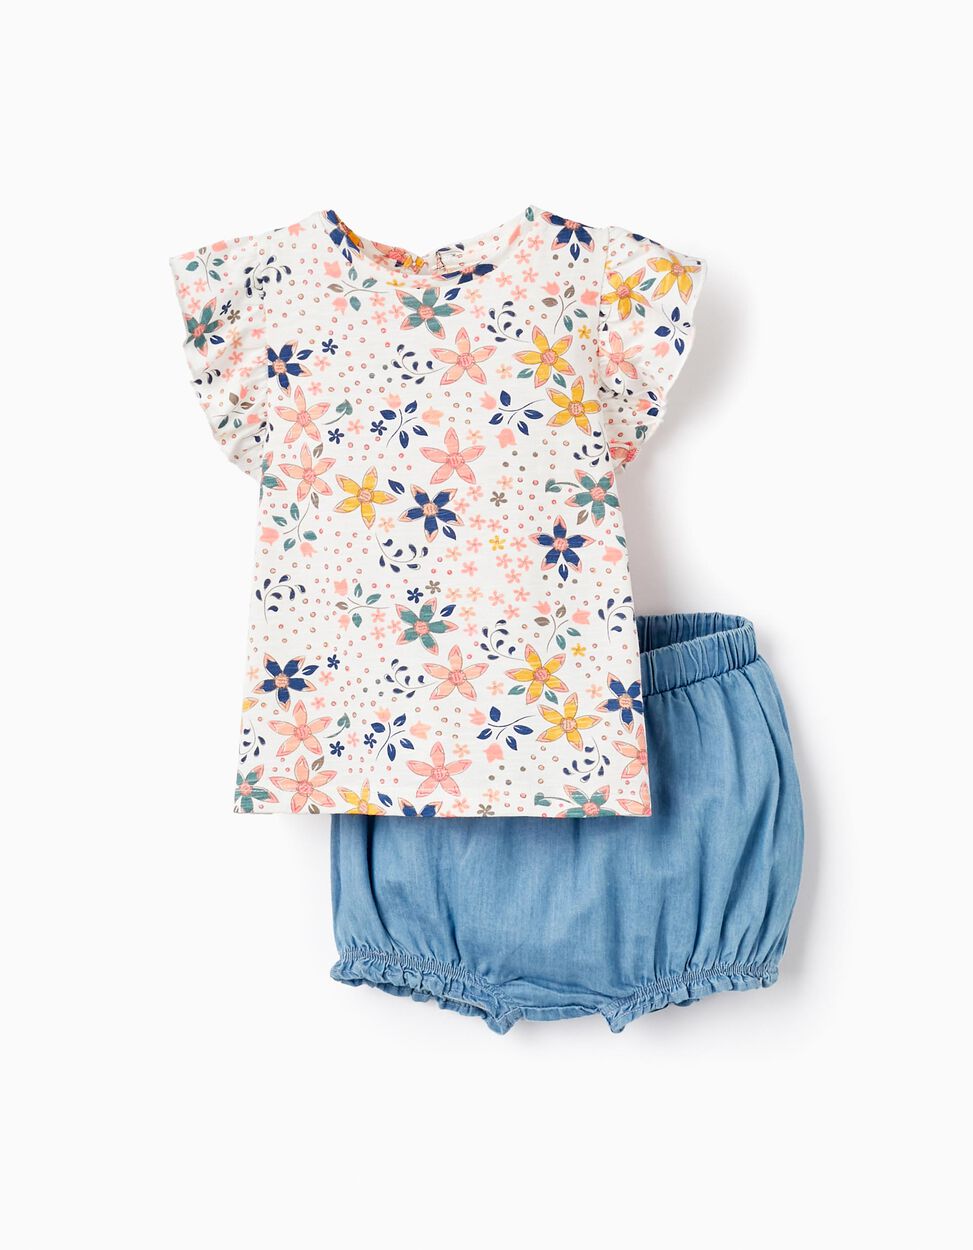 Acheter en ligne T-Shirt + Bloomer Pour Bébé Fille, Blanc/Bleu